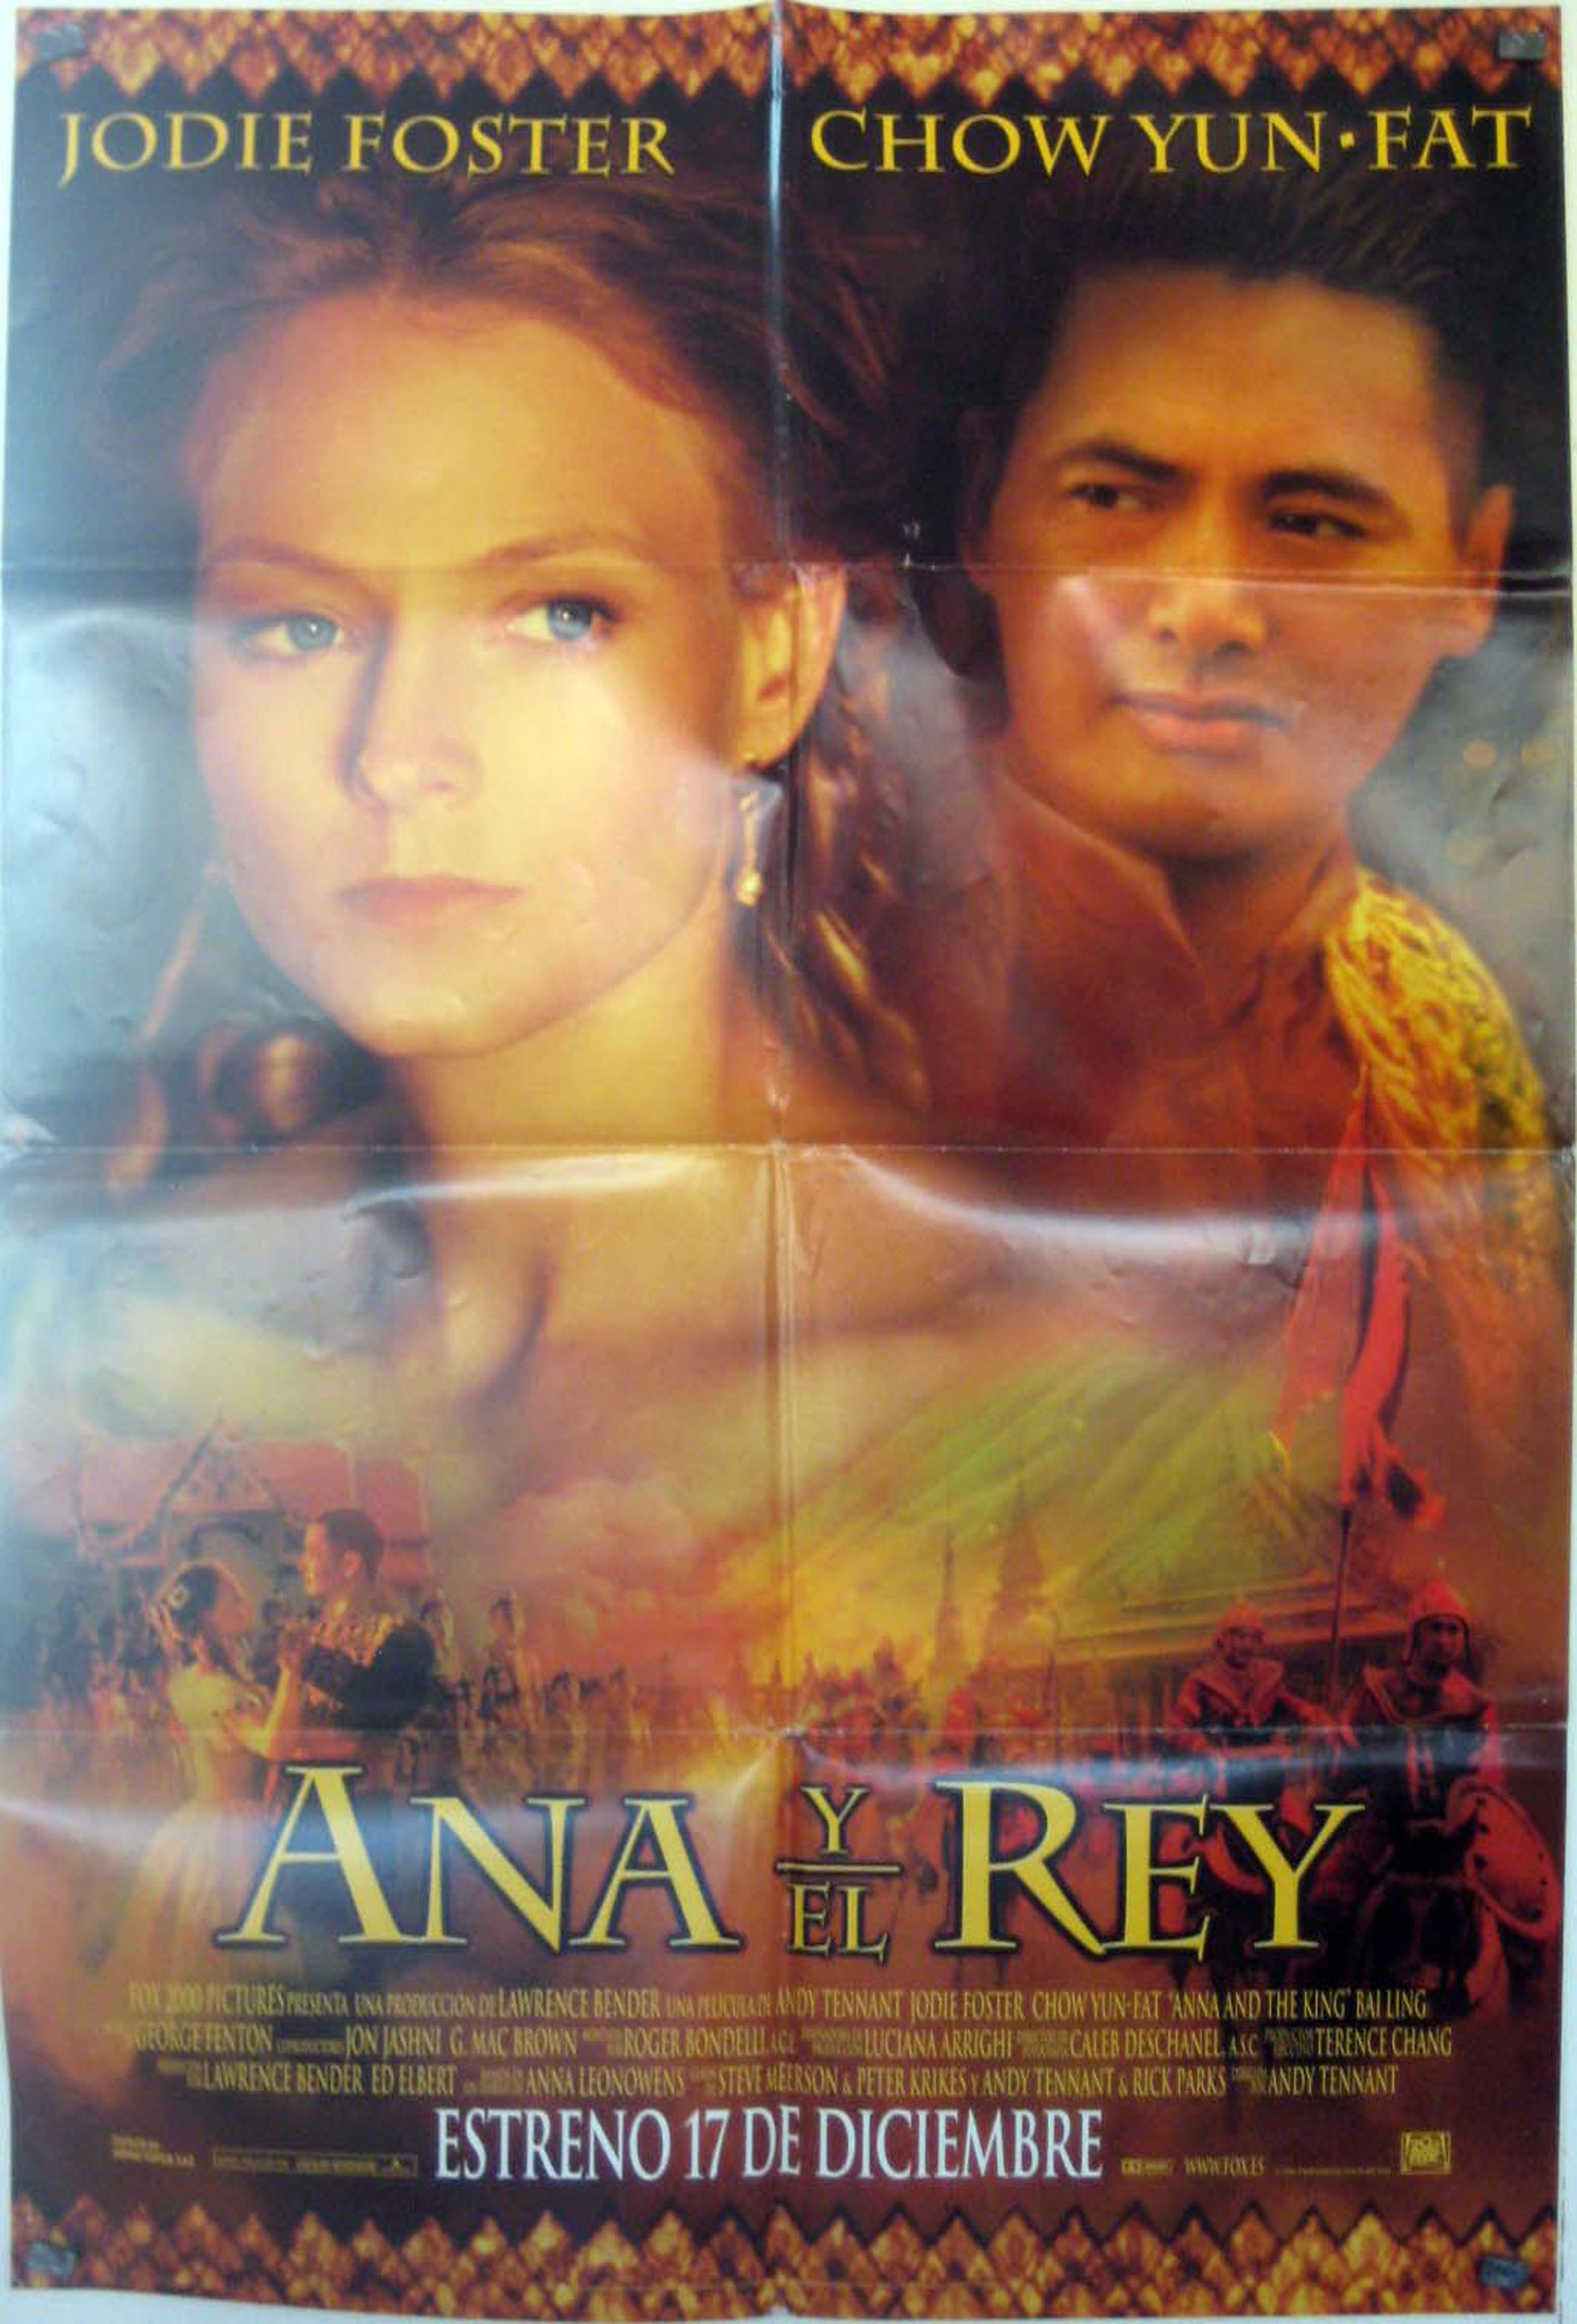 ANA Y EL REY